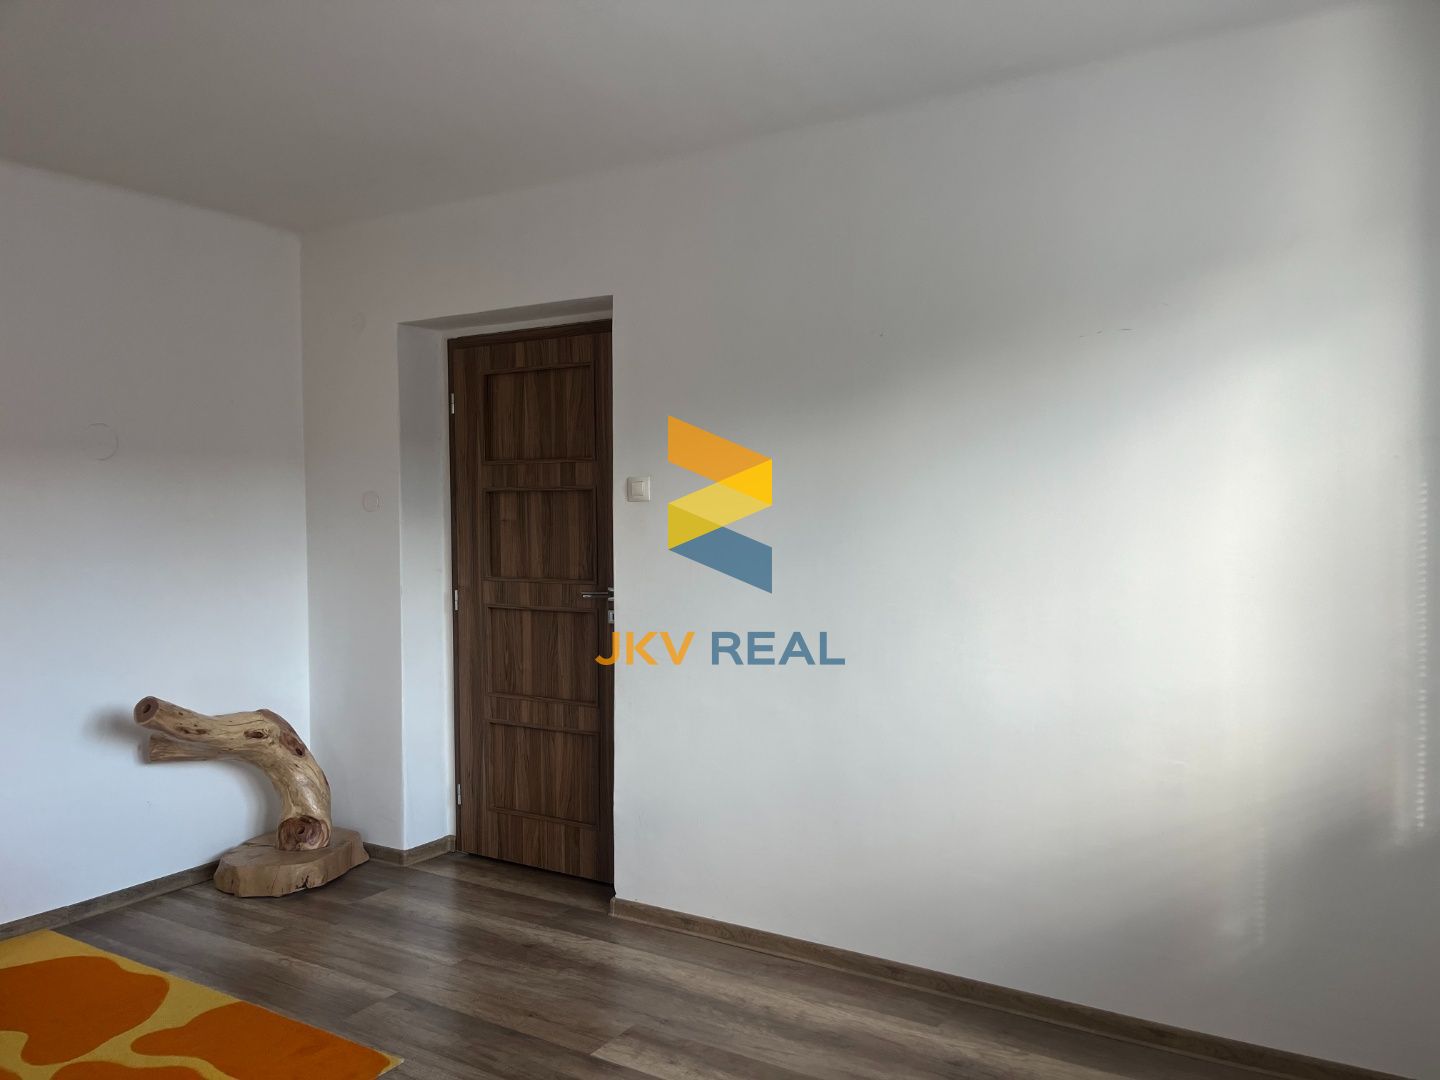 JKV REAL ponúka na predaj krásny 3 izbový byt na ulici M.R. Štefánika v Prievidzi